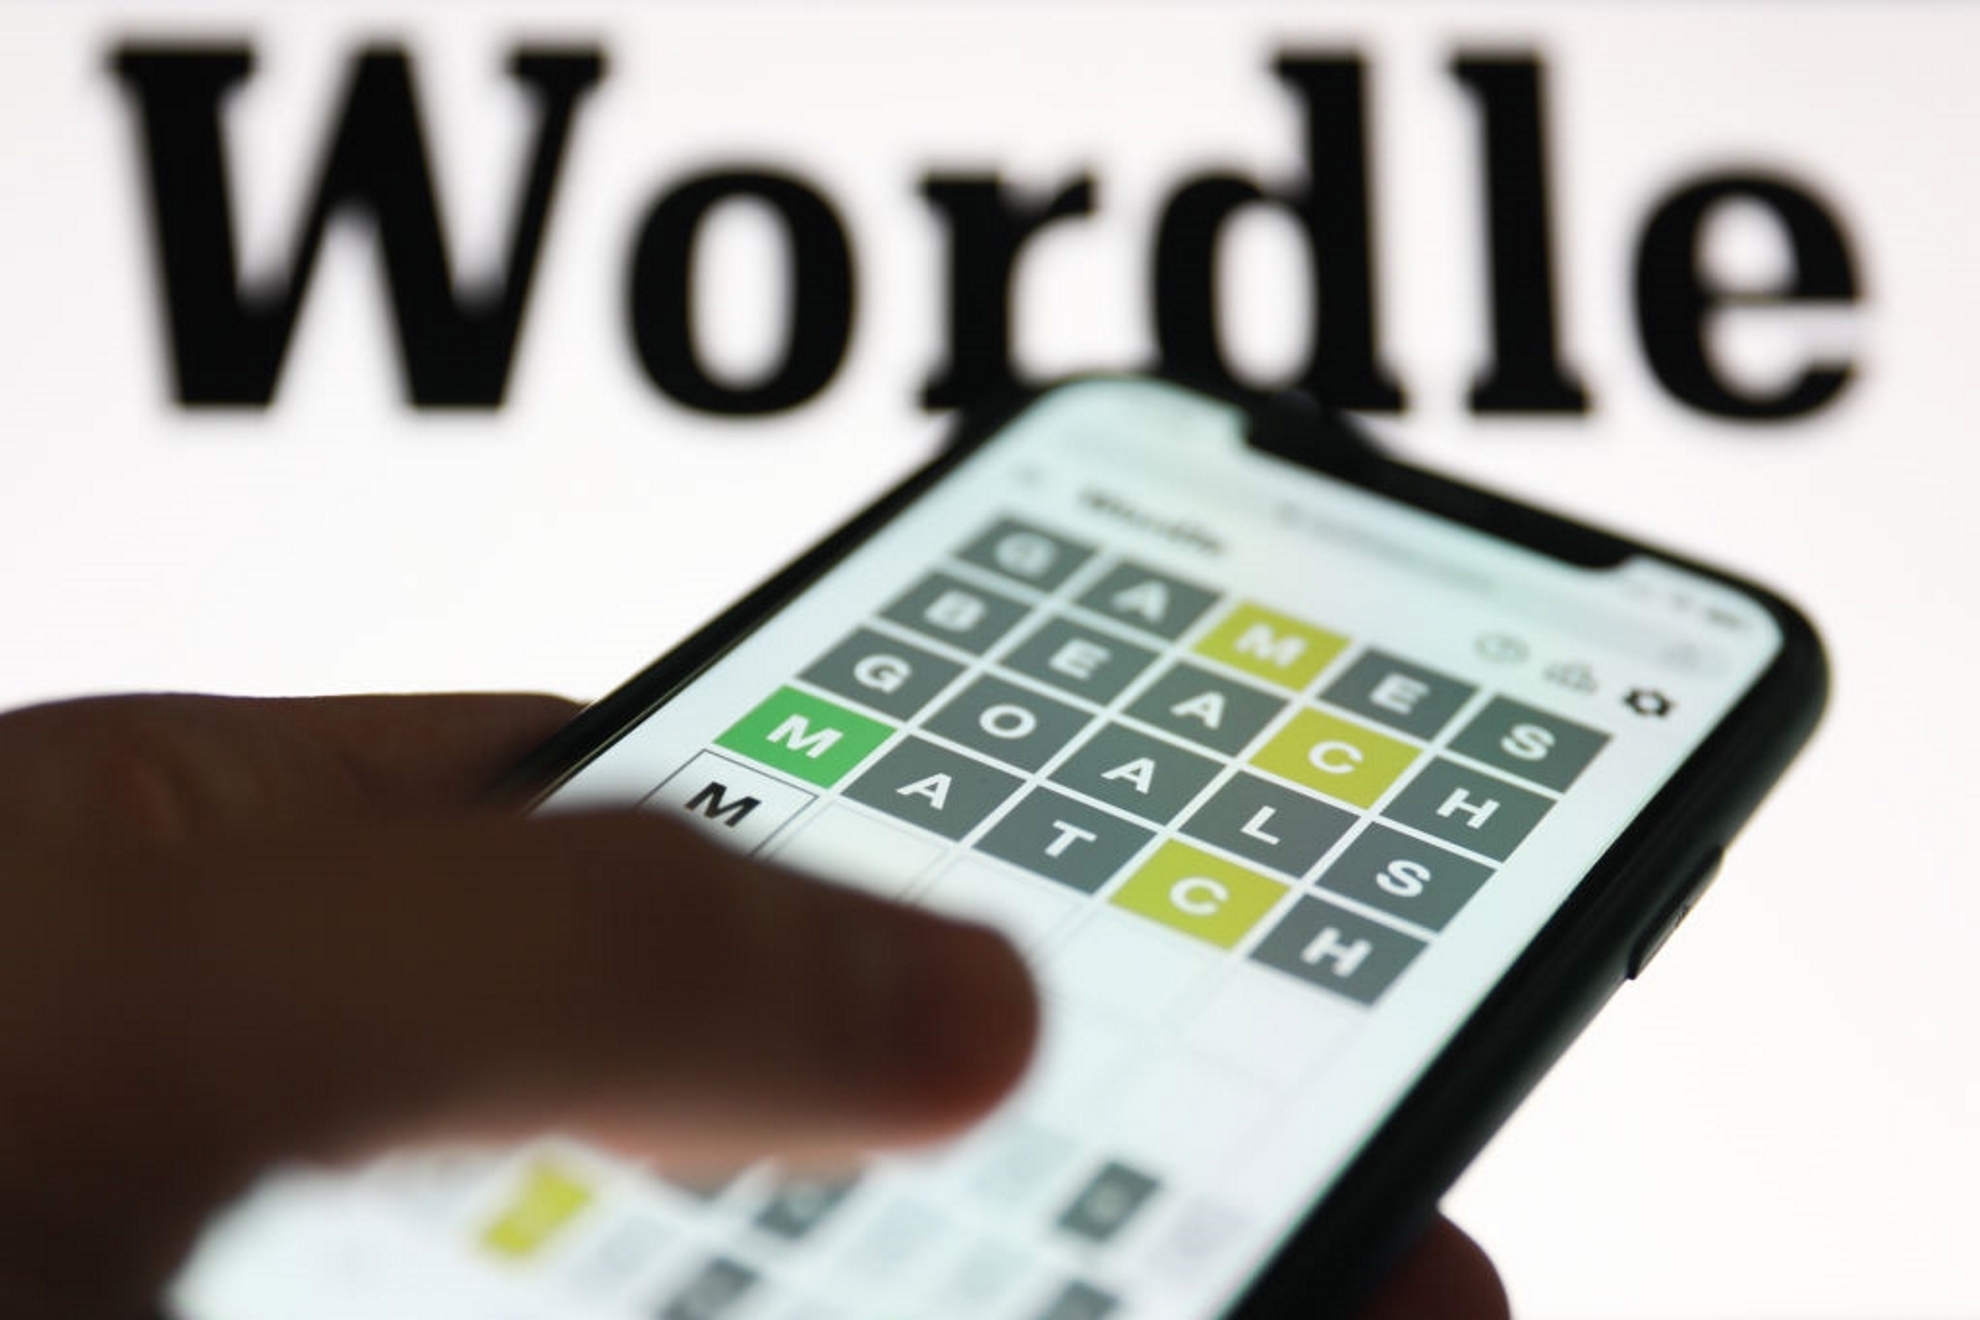 Wordle espaol hoy, 18 de marzo: normal, tildes y cientfico | Soluciones y pistas para adivinar la palabra